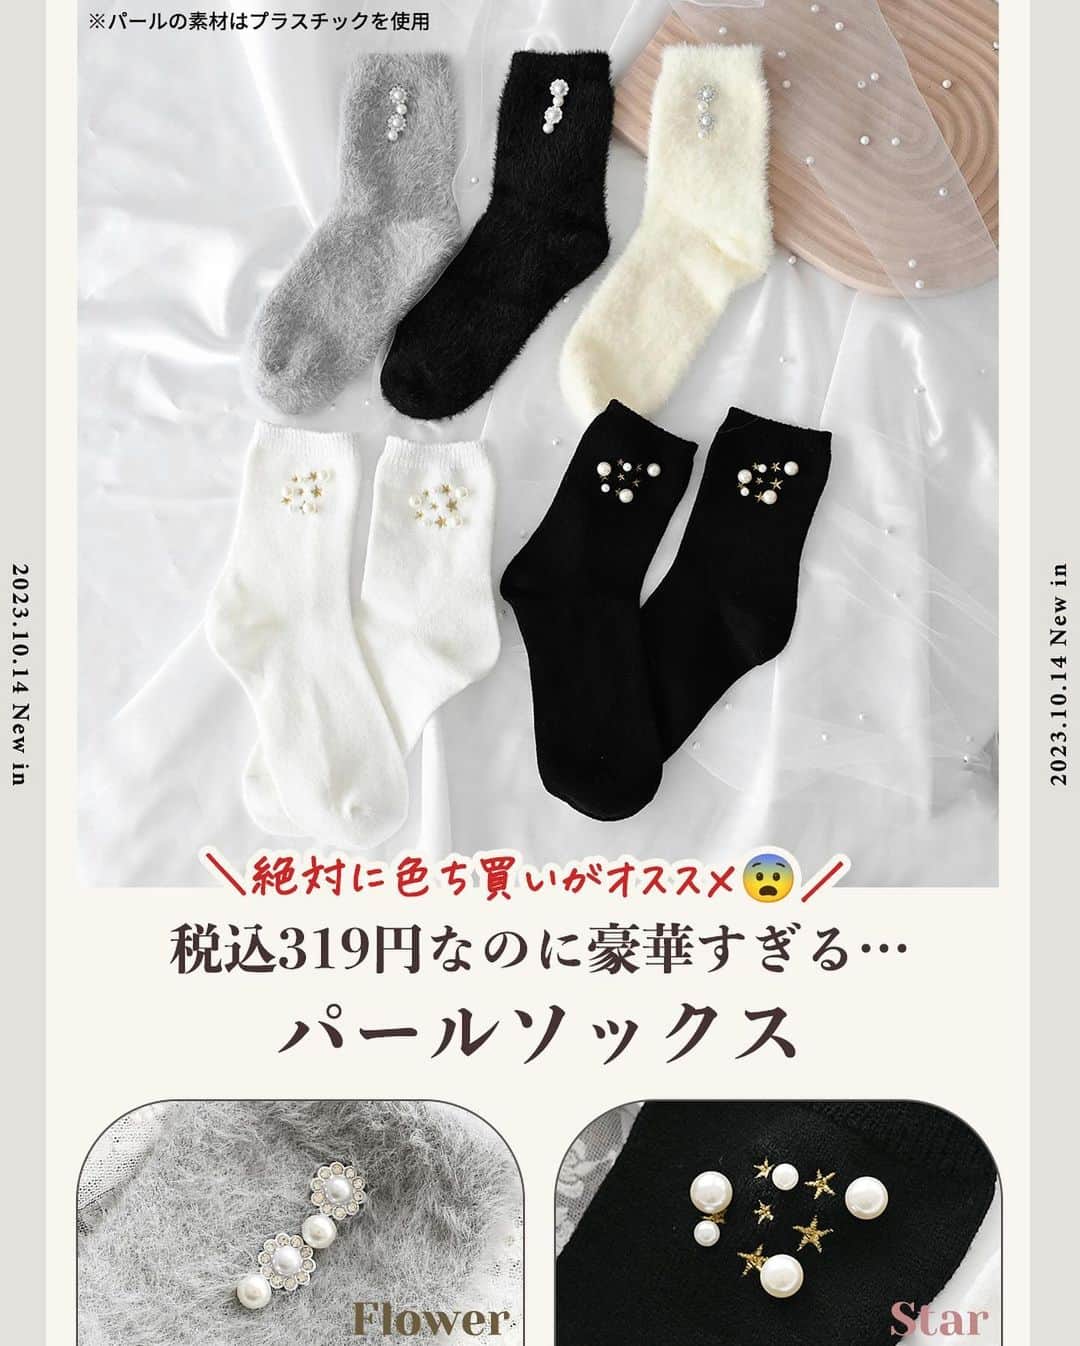 MUMUさんのインスタグラム写真 - (MUMUInstagram)「🧦 明日10月14日（土）は #しまむら @grshimamura ×MUMUコラボの新作靴下も発売* 今回の靴下は税込319円ながら豪華すぎるアイテムに。 こんなに豪華な靴下はこれが最後かもしれません😨 絶対に色ち買いがオススメです❤️‍🔥  より詳しい内容は是非ブログをご覧いただけたら嬉しいです🙇‍♀️  ＜販売店について＞ ----- しまむら全店舗：10月14日（土）～ しまむらオンラインストア：10月14日（土）17時～ https://www.shop-shimamura.com/?b=shimamura -----  ■ビジューシャギーソックス 税込319円 【品番】 アイボリー（中白）：445-6553 グレー（中灰）：445-6555 ブラック（中黒）：445-6554 【素材】 ナイロン、ポリエステル、その他 【サイズ】 23-25cm、15cm丈  癒しの履き心地と、とびきりの可愛さが手に入る✨ シューズからチラ見せするだけで可愛い、暖かシャギー素材のソックスが登場！ ふわふわやわらかな触り心地がたまらない♬ クセになる履き心地がポイント。 優しい肌触りでチクチクしにくく、暖かく過ごしていただけます。 毛足が長すぎたり分厚すぎるとルームソックスっぽい印象になったり、シューズを履いた時に窮屈に感じたりしますが、こちらは程良い厚みでお出かけコーデに取り入れやすいのもポイント。 税込319円と超プチプラですが…豪華な装飾をふんだんに使いMUMU&Co.らしい人と差がつくアイテムに✨ ぐるっとクリアストーンをあしらったフラワービジューとパールを2つずつ。 シャギーソックスはほっこりとした印象になりがちですが、こちらはキレイめフェミニンコーデにも合わせられます◎ 縦に並んだ装飾はスッキリとした足元を演出。 パールはビス留めで取れにくく補強しております。 履き口はやわらかいゴムを使用しかゆくなりにくく。 伸縮性抜群♬ 合わせやすい15cm丈でパンツにもスカートにも活躍* しっかり防寒したい日にもピッタリなアイテムです。  ■ スター刺繍×パールソックス  税込319円 【品番】 オフホワイト（中白）：445-6551 ブラック（中黒）：445-6552 【素材】 ポリエステル、アクリル、その他 【サイズ】 23-25cm、15cm丈  そろそろ星が綺麗な季節🌃 ということで…星座風デザインのソックスを作りました！ こちらもプチプラなのに超！豪華仕様。 大小異なるパールと星刺繍のコンビネーションが美しい一足に🌟 暗くなりがちな冬のコーディネートに輝きをプラスしてくれます✨ 星はゴールド刺繍でキラリ☪️ パールはビス留めで取れにくく補強。 生地もふっくらと厚みがあり暖かく履いていただける一足に。 ふんわりとしたやわらかい糸を使用しているので伸縮性にも優れています◎ 履き口はゆったり設計。 合わせやすい15cm丈でパンツにもスカートにも活躍* 思わず見せたくなる存在感たっぷりの靴下が税込319円と破格😨 私も爆買い予定です🔥 . #PR #プチプラコーデ #instagood #プチプラ #靴下 #instalike #服好きな人と繋がりたい #ootd #fashion #MUMU #流行 #しまむらコーデ #しまパト #grshimamura #しまむら購入品 #防寒 #outfit #しまスタ #プチプラファッション #mumuニスタ #mumuコラボ #激安 #パール #靴下コーデ」10月13日 13時54分 - mumudesukamumudesuyo